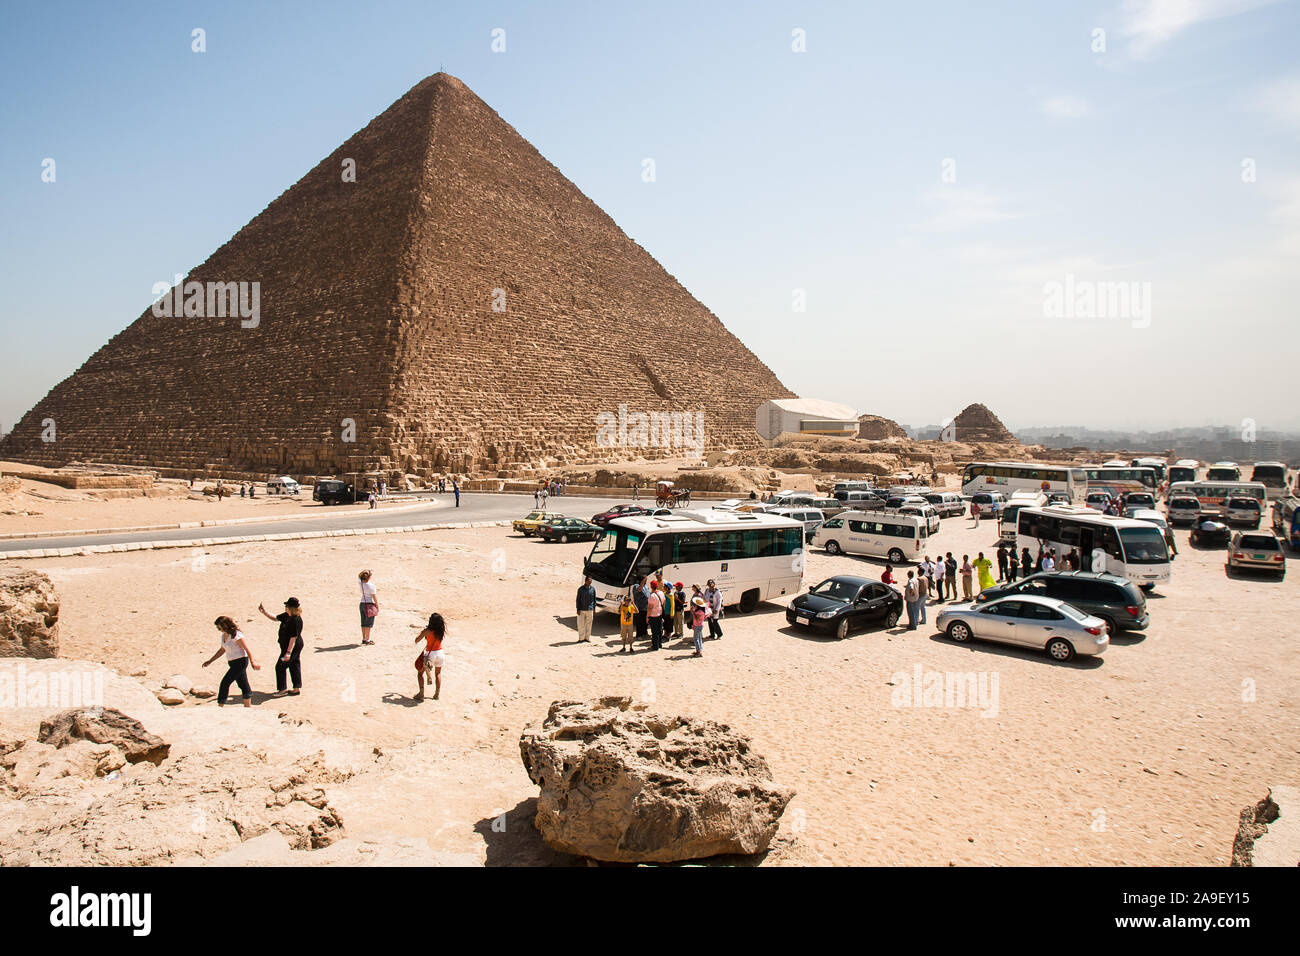 Giza, Cairo, Égypte, le 2 mai 2008 : La pyramide de Chéops (la grande pyramide de Gizeh) domine de touristes et d'un parking sur le plateau de Gizeh. Banque D'Images